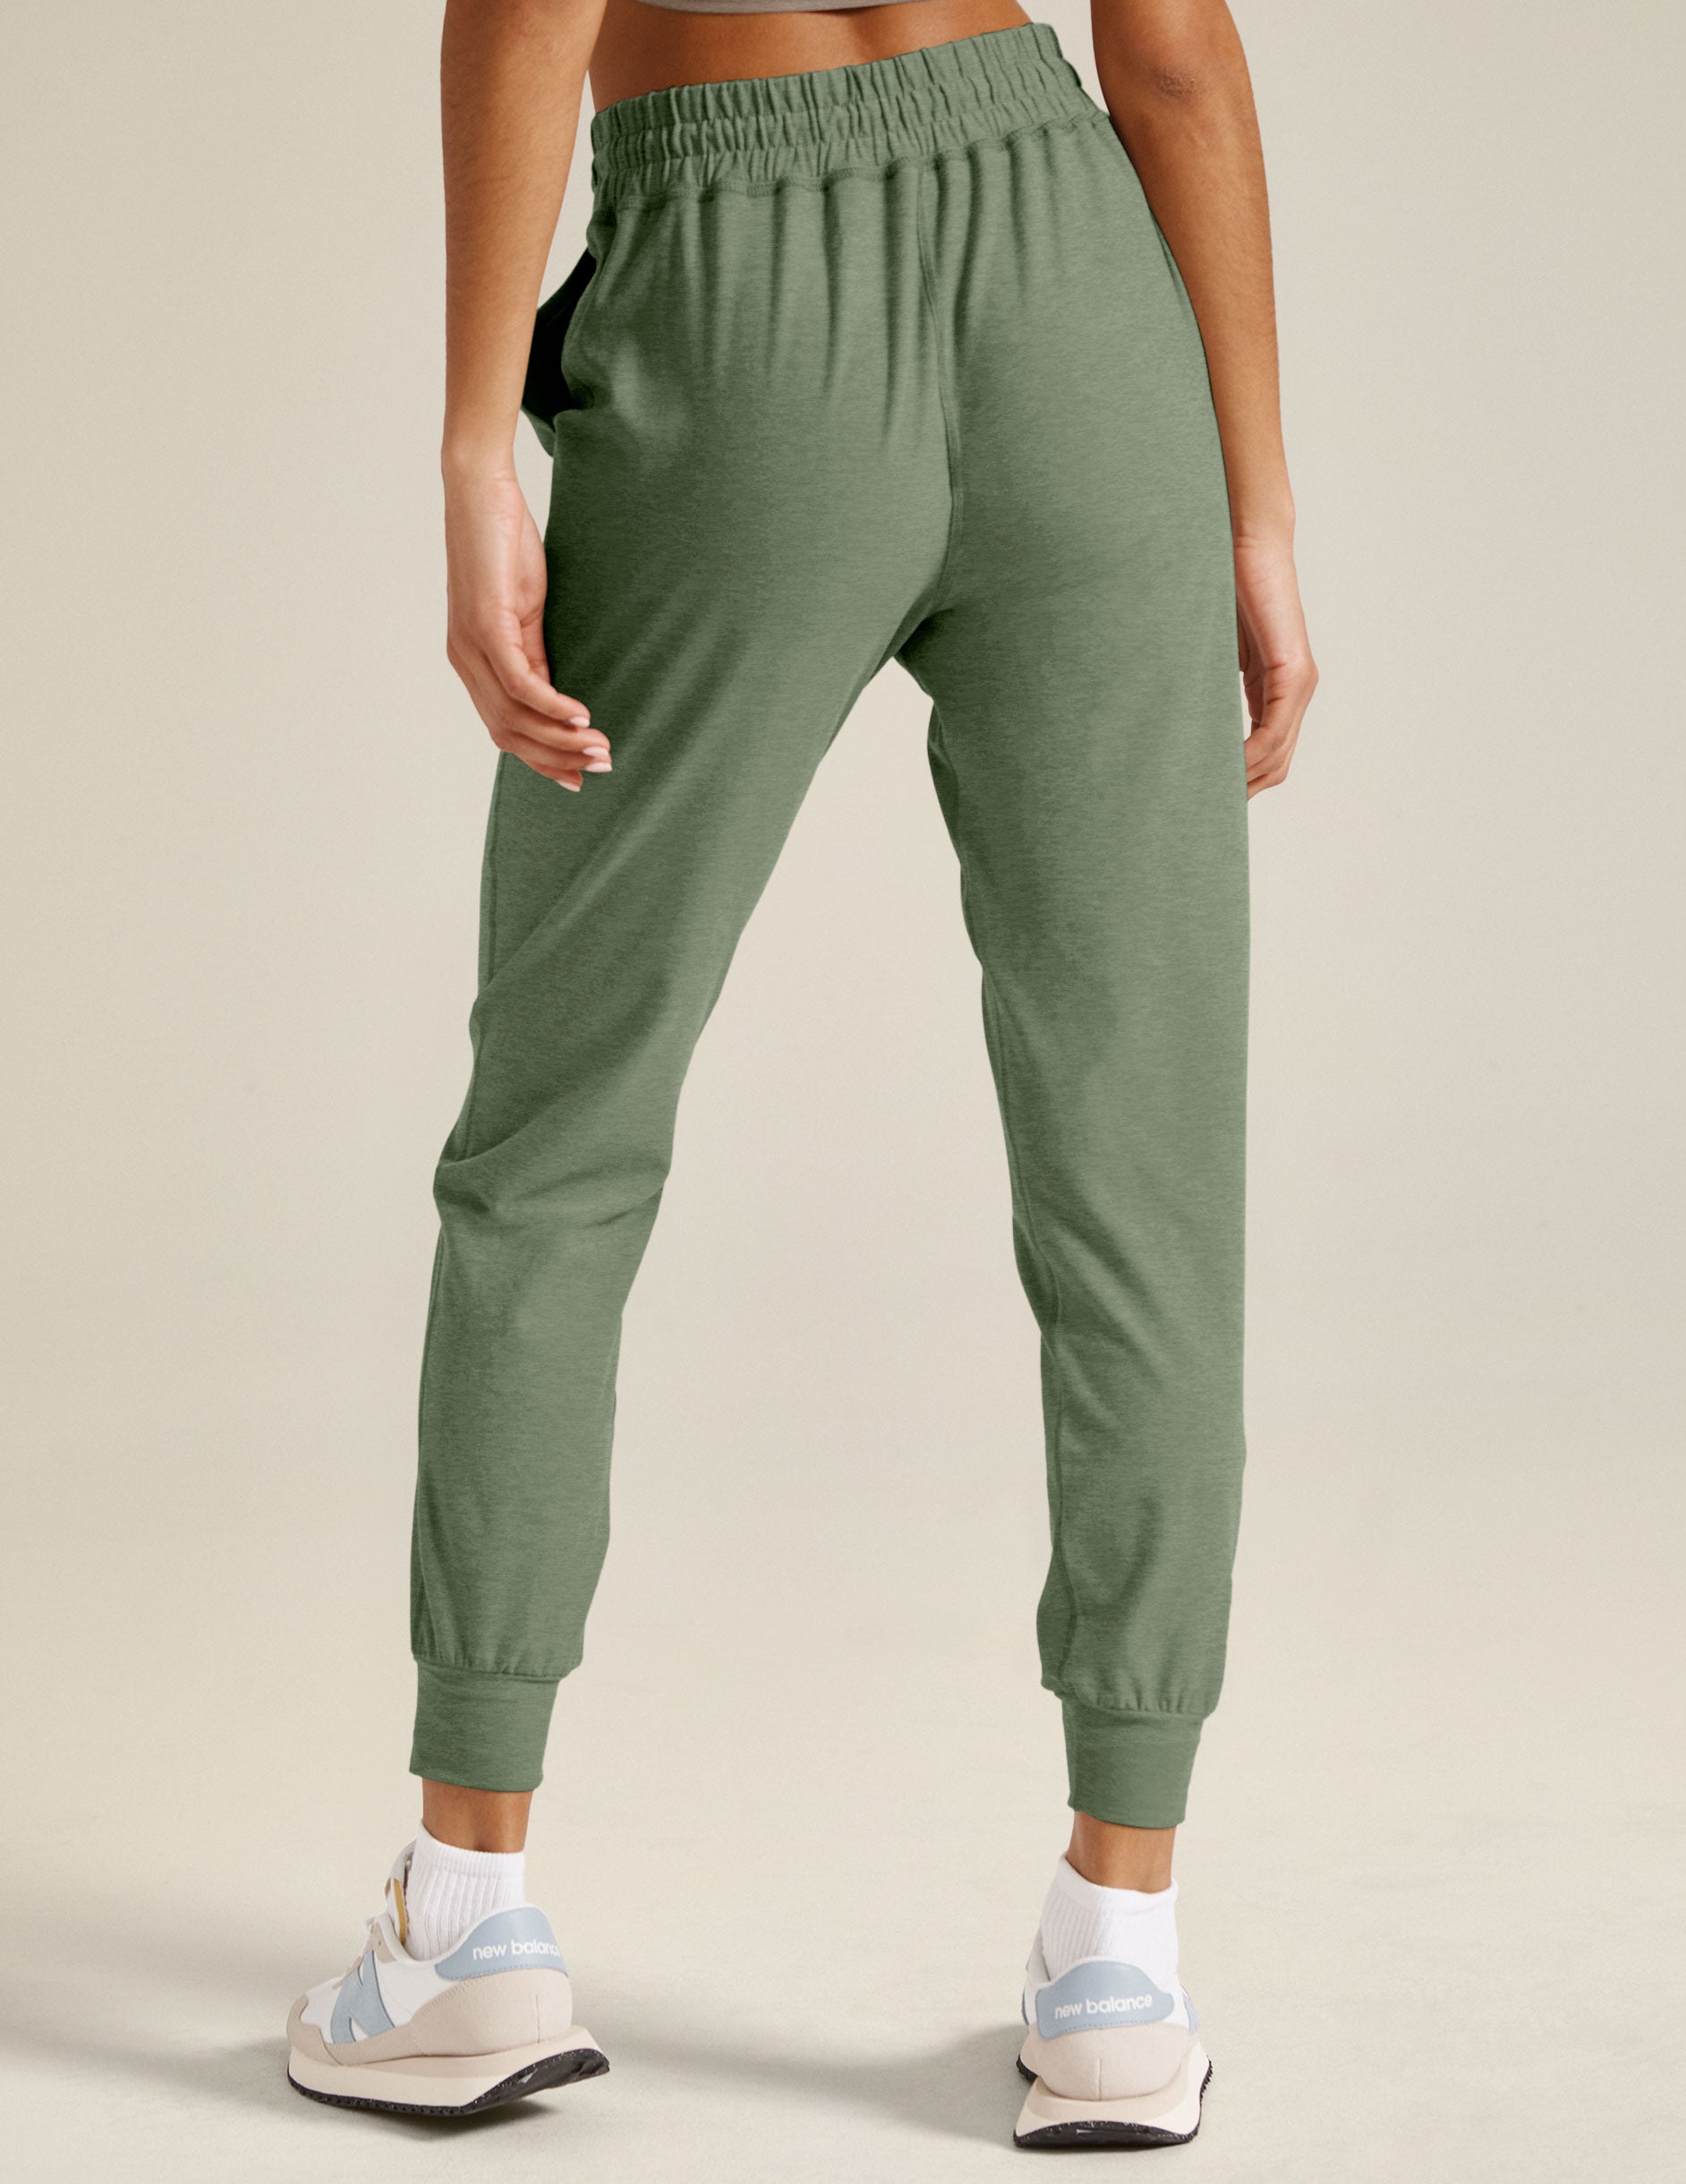 green midi jogger pants with a drawstring at waistband.